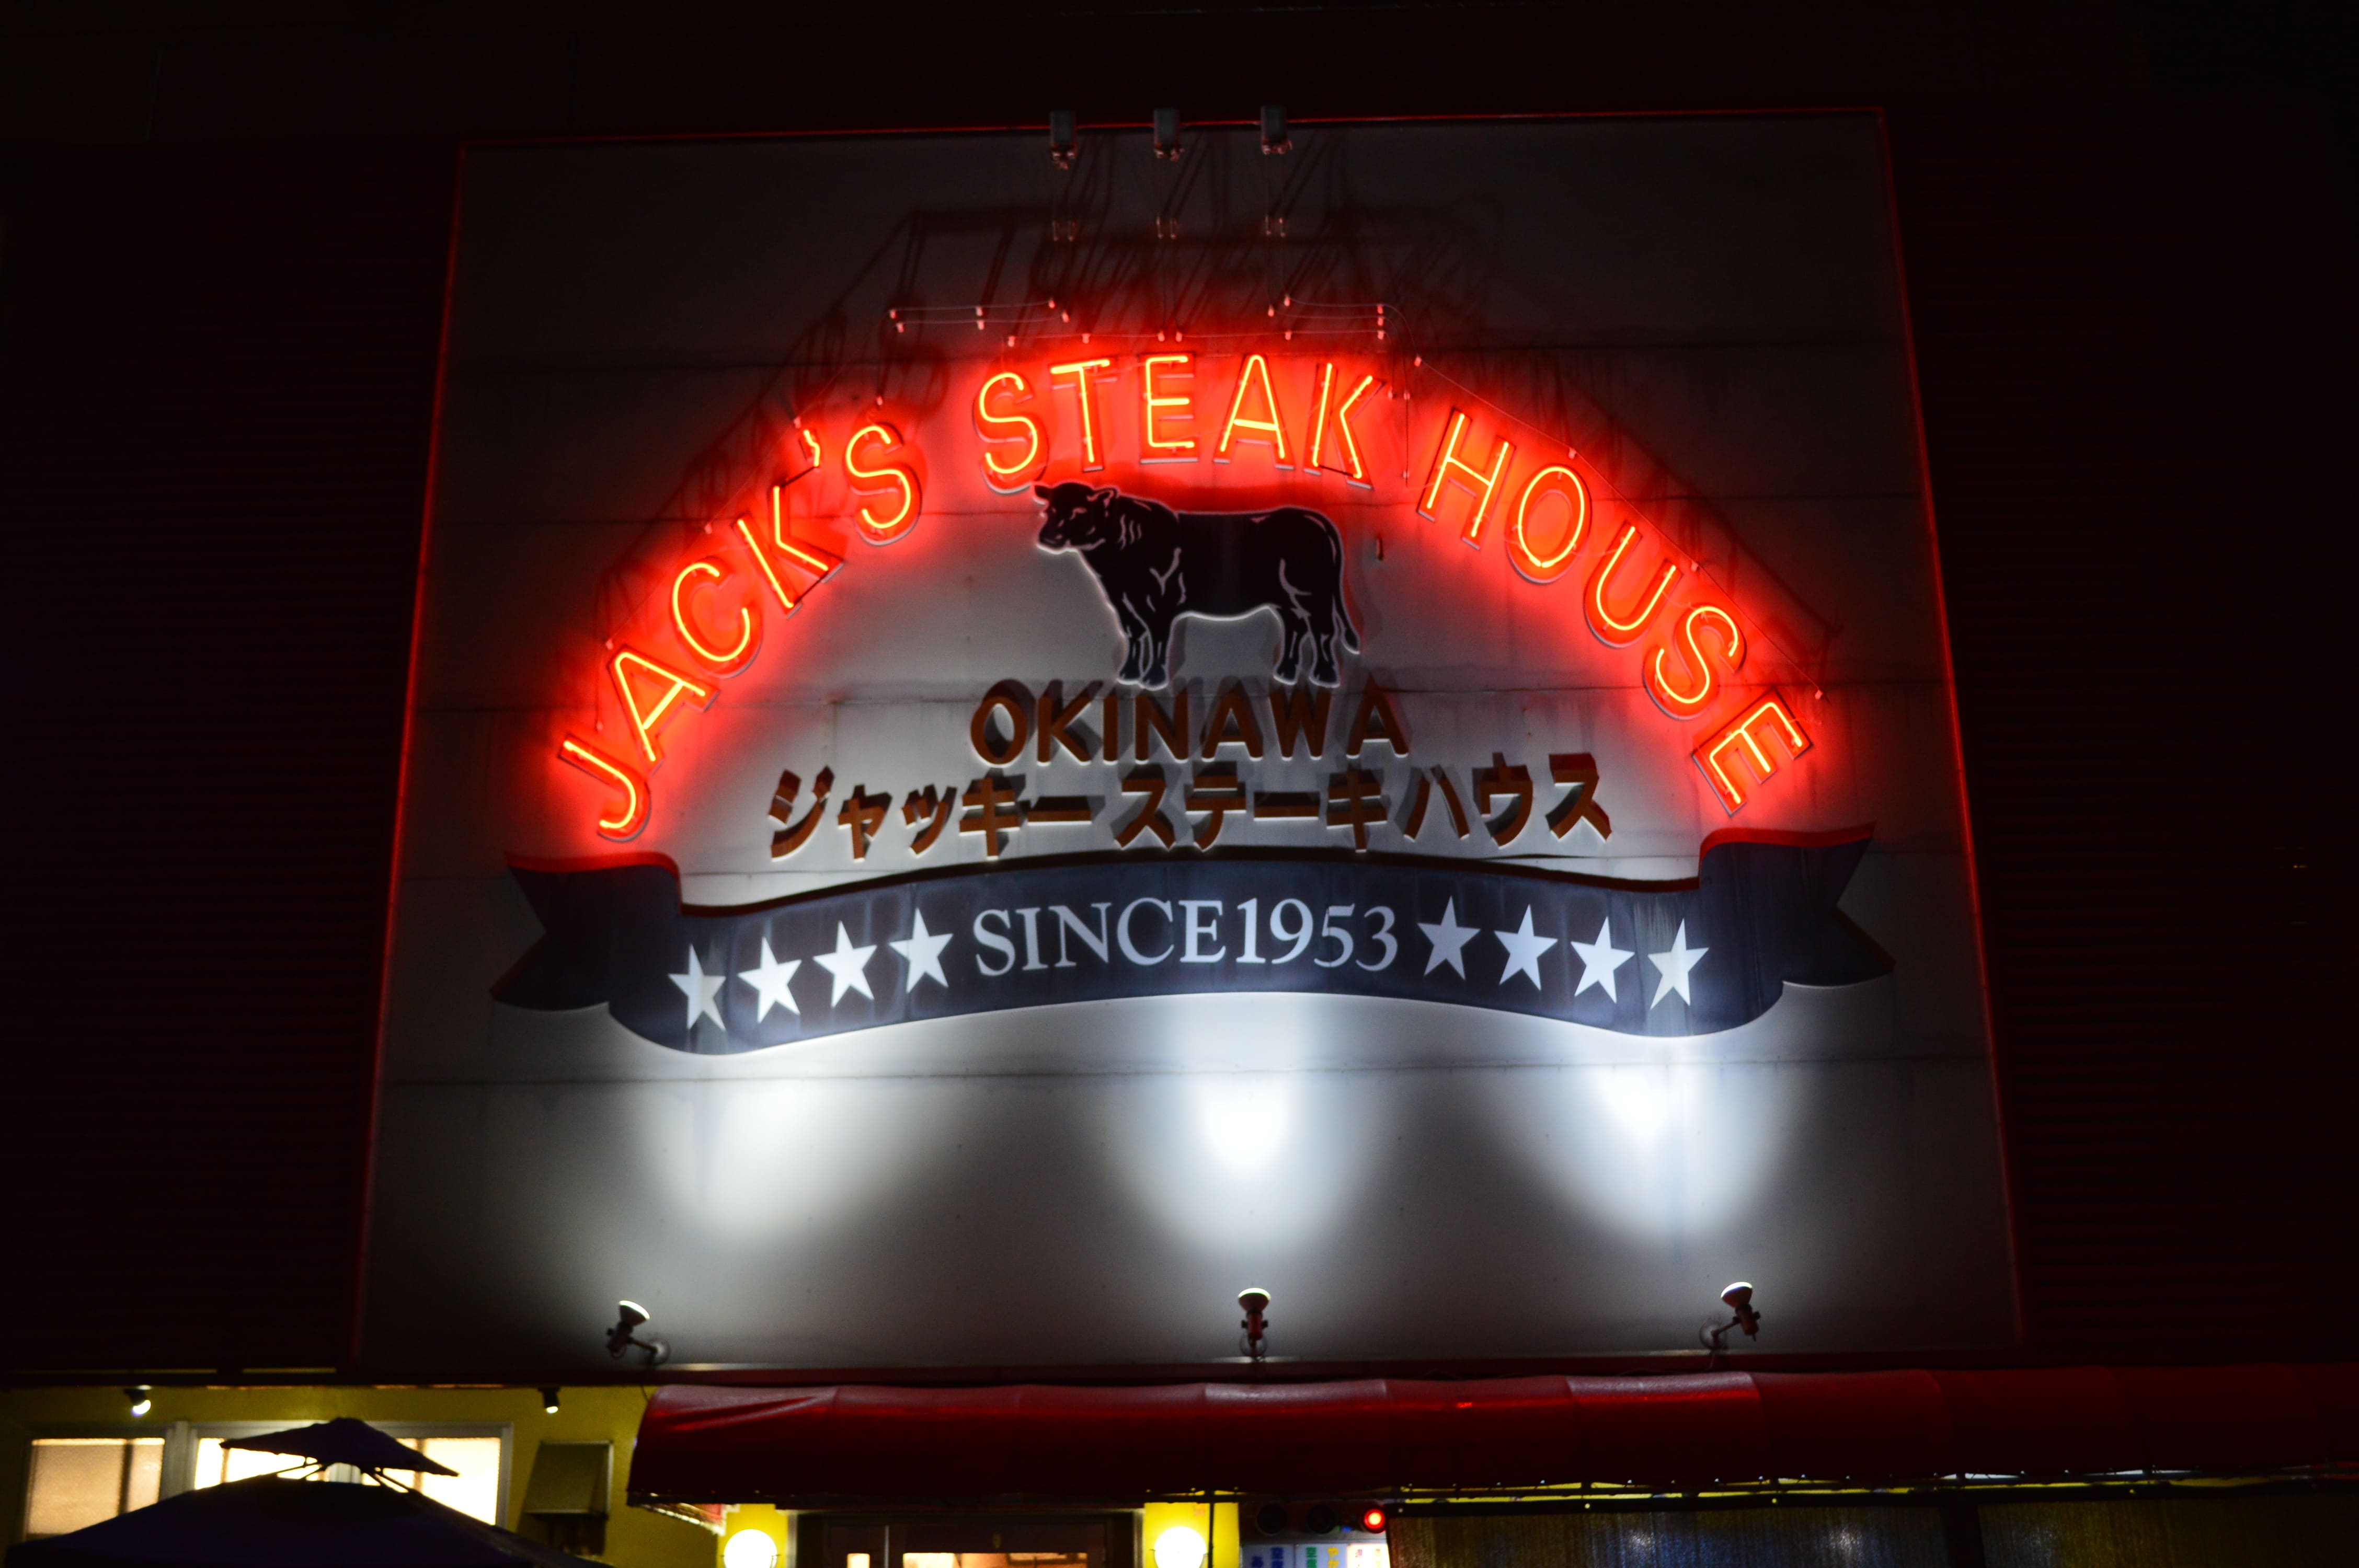 沖縄ステーキの草分け的存在、ジャッキーステーキハウス。 数あるステーキ店の中でも一日中客足が途絶えることのない人気の秘密